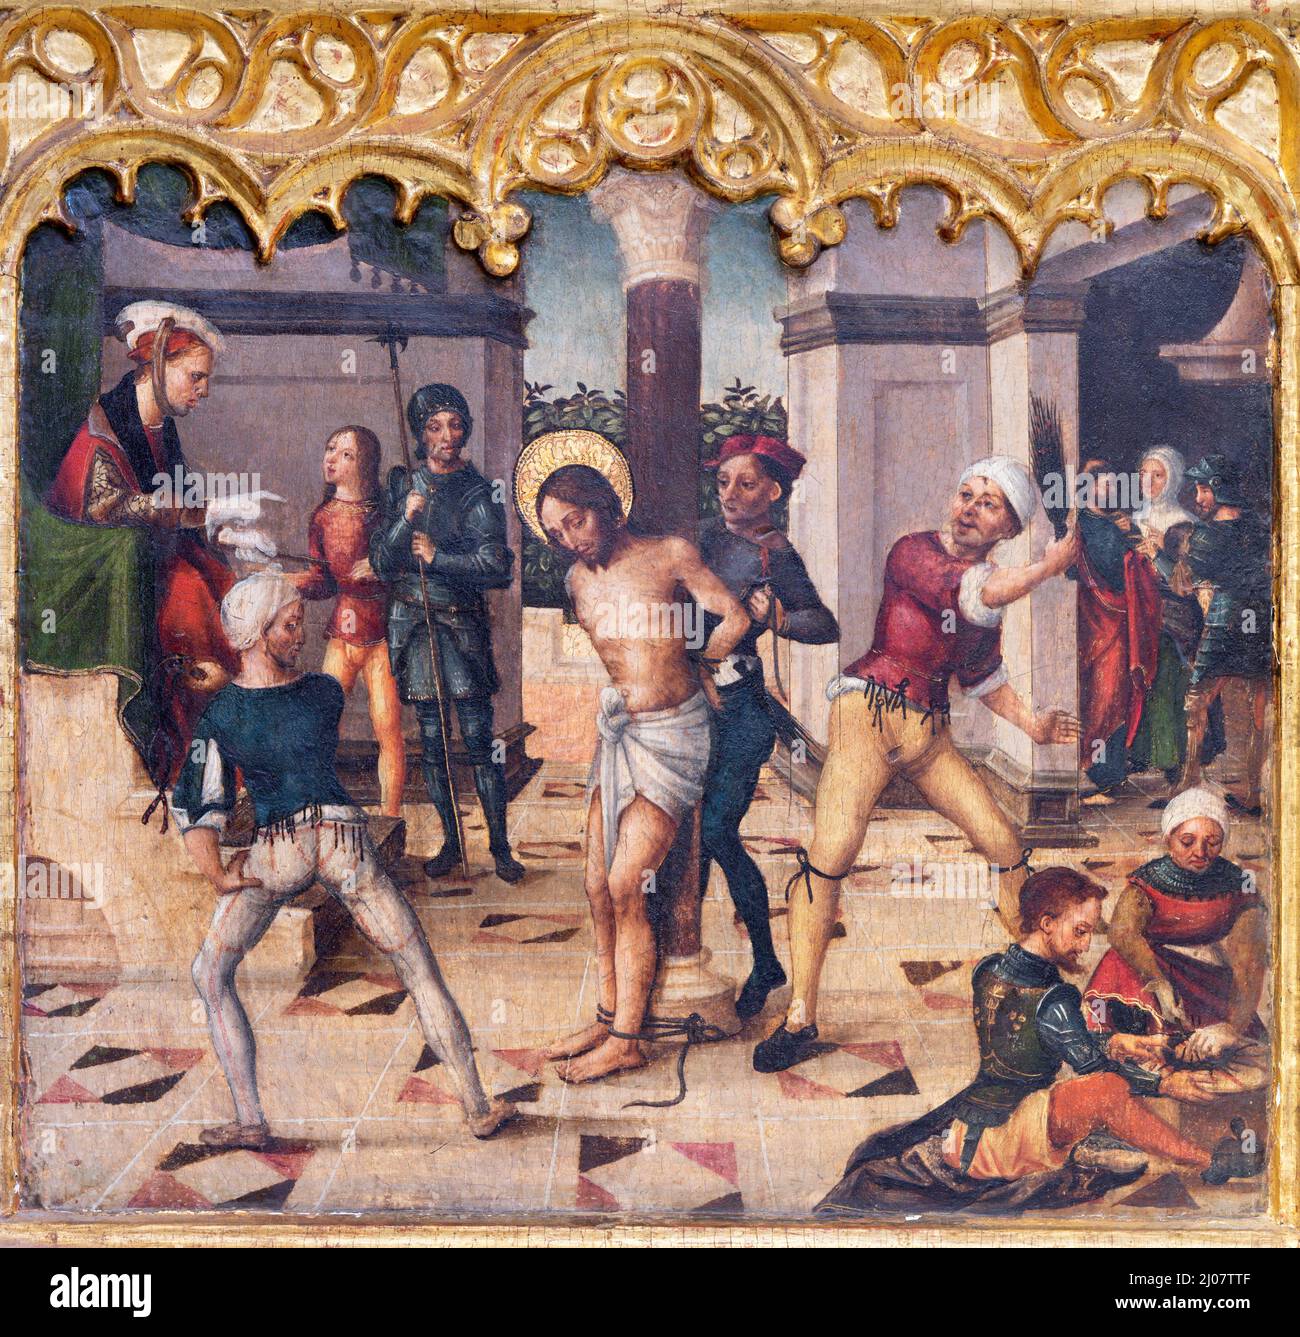 VALENCIA, SPANIEN - 14. FEBRUAR 2022: Das Gemälde der Flagellation auf dem Seitenaltar in der Kathedrale - Basilika der Himmelfahrt unserer Lieben Frau Stockfoto